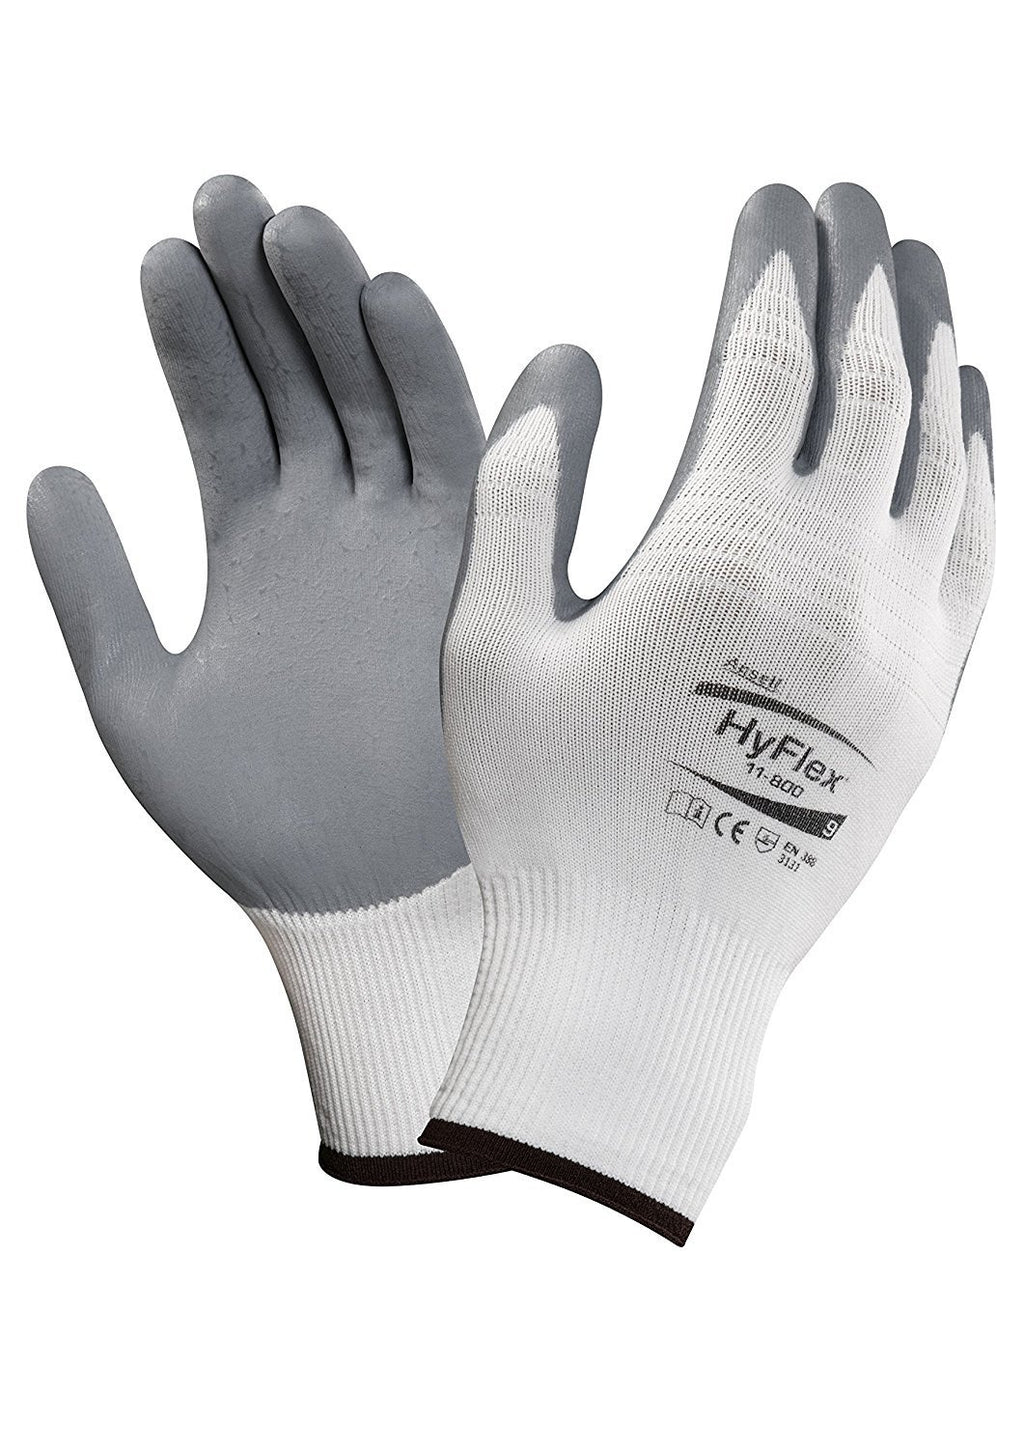 HyFlex Gloves #11-800